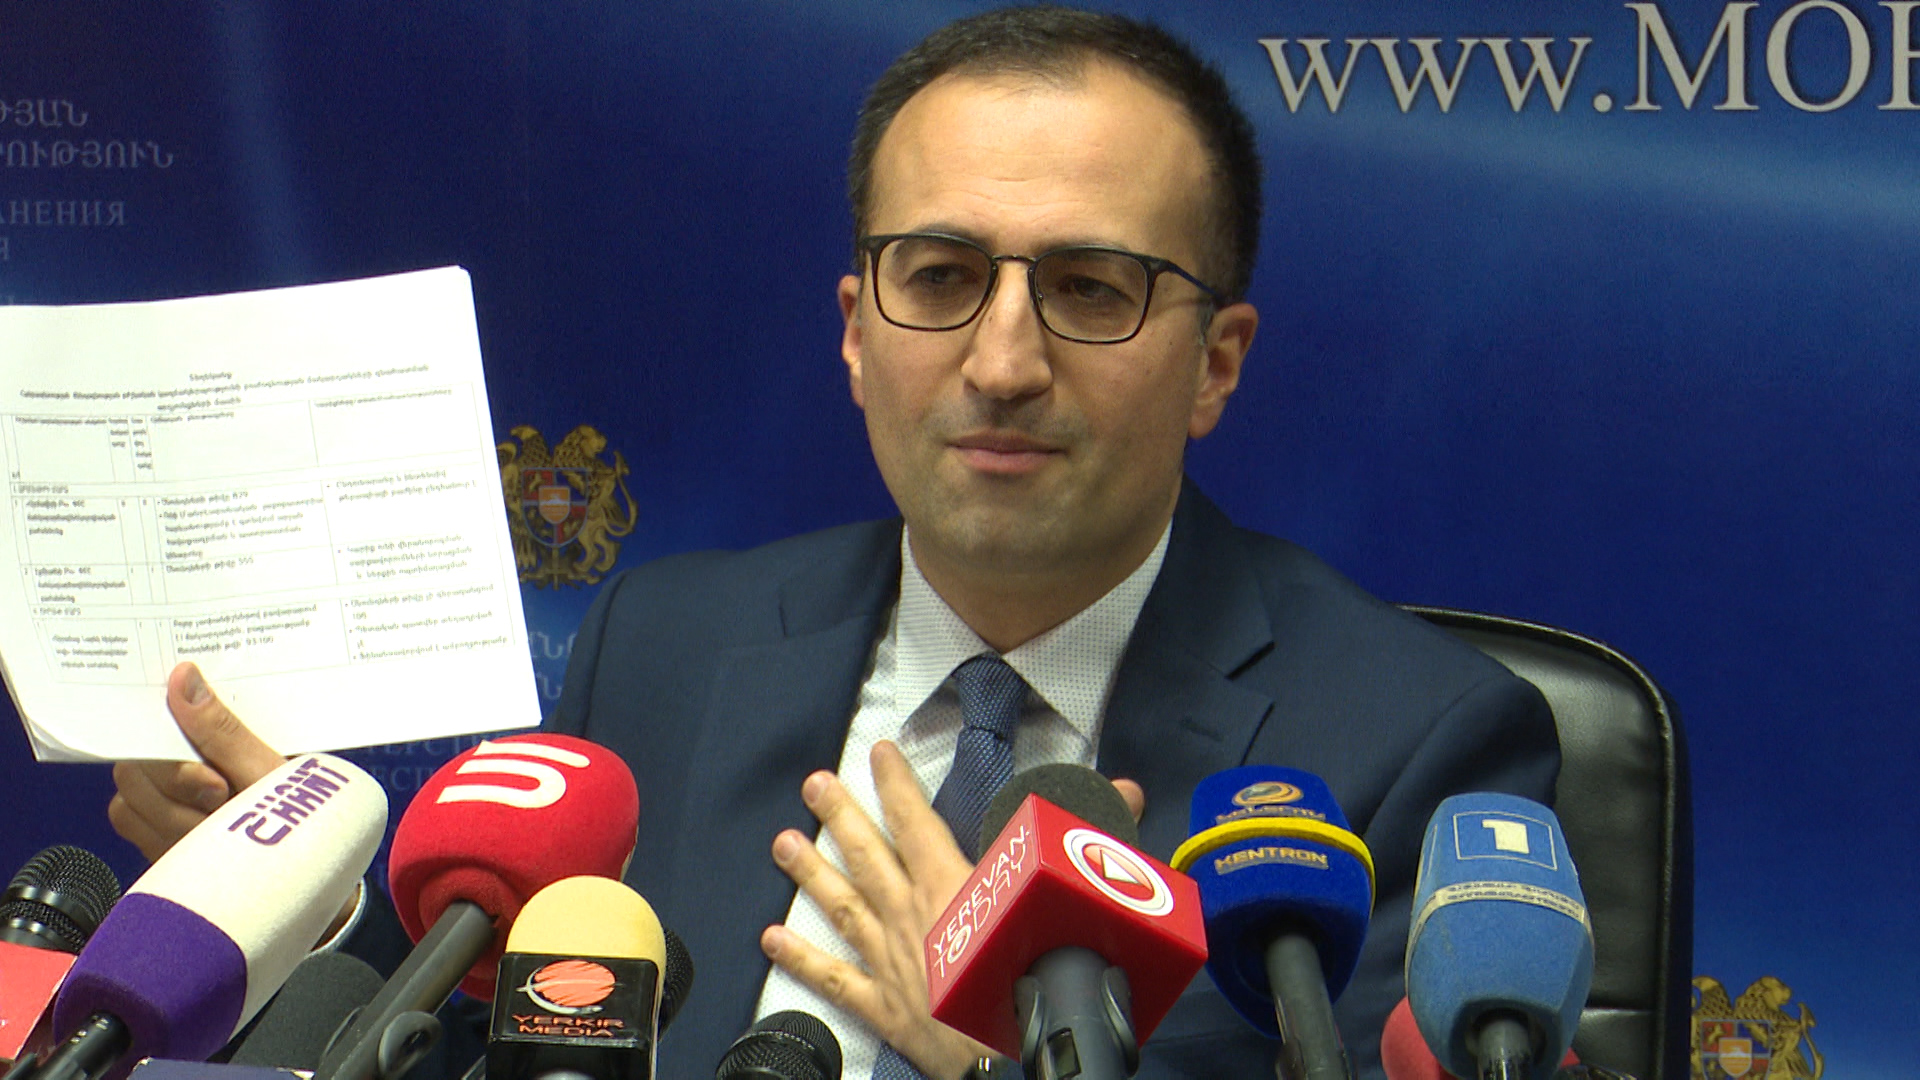 В Армении зарегистрировано 72 случая заражения коронавирусом - Минздрав